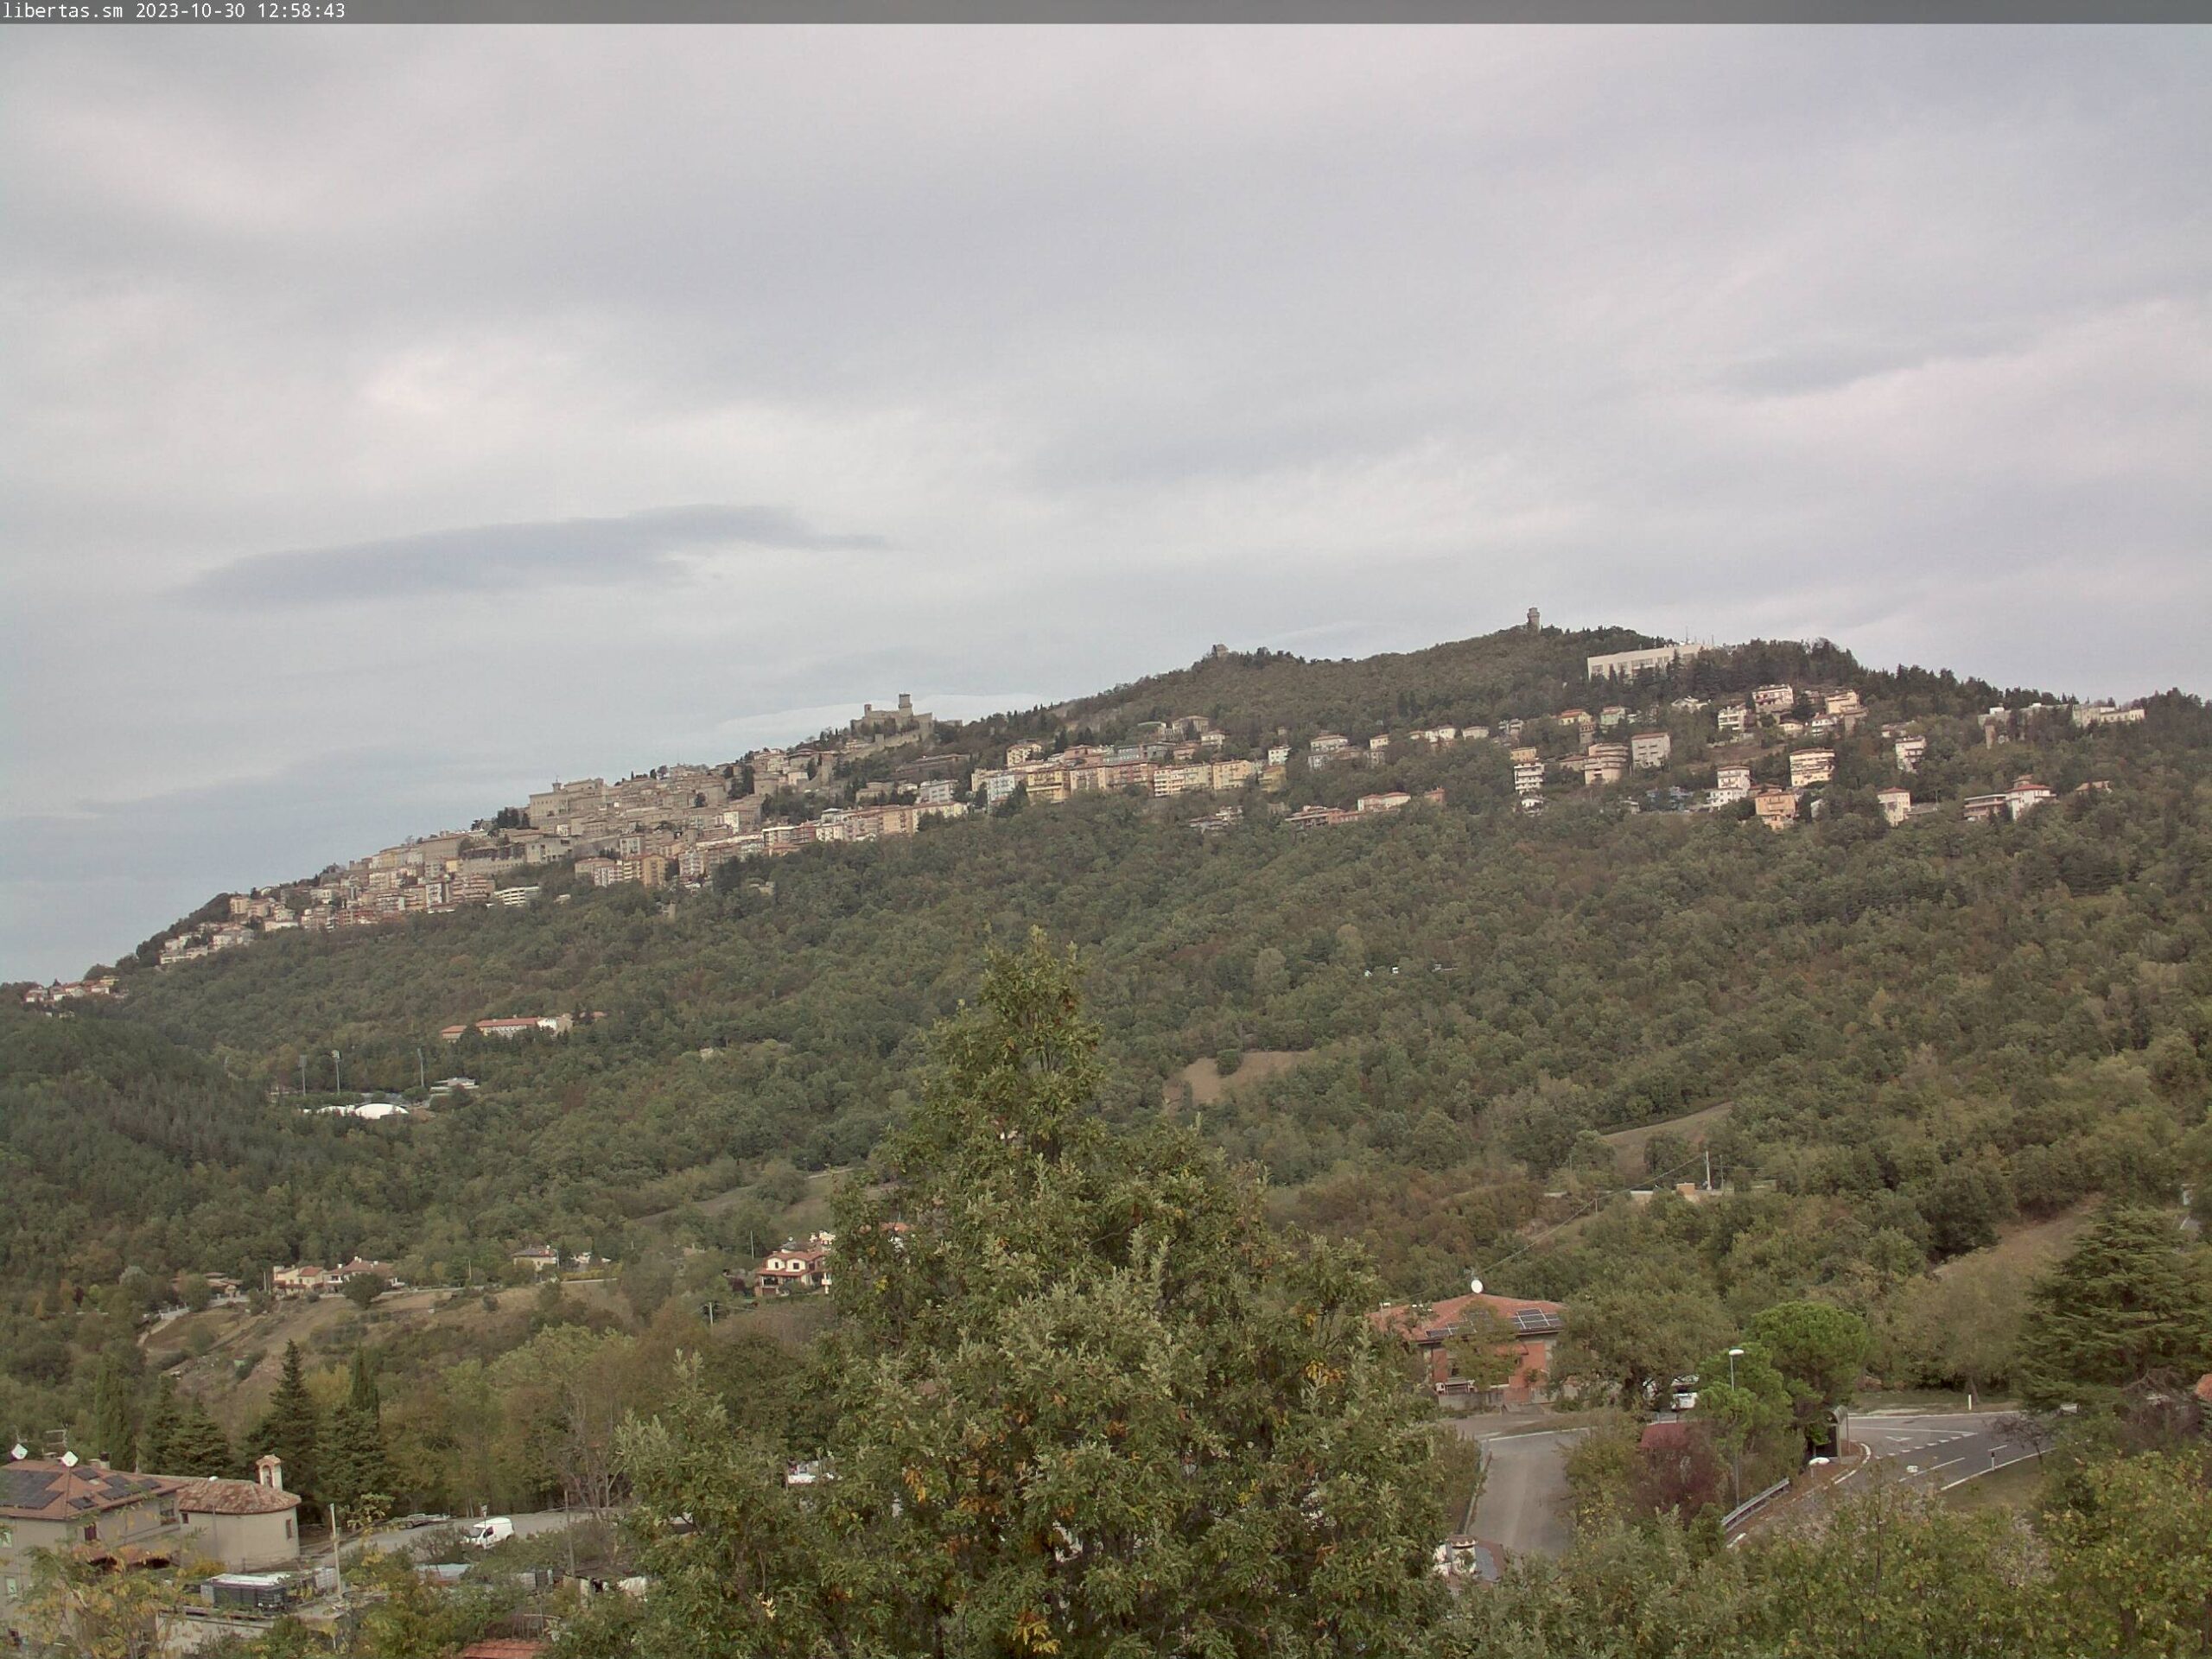 San Marino. Meteo: ancora vento forte da sudovest, passaggio di nuvole, veloci acquazzoni intervallati da ampie schiarite